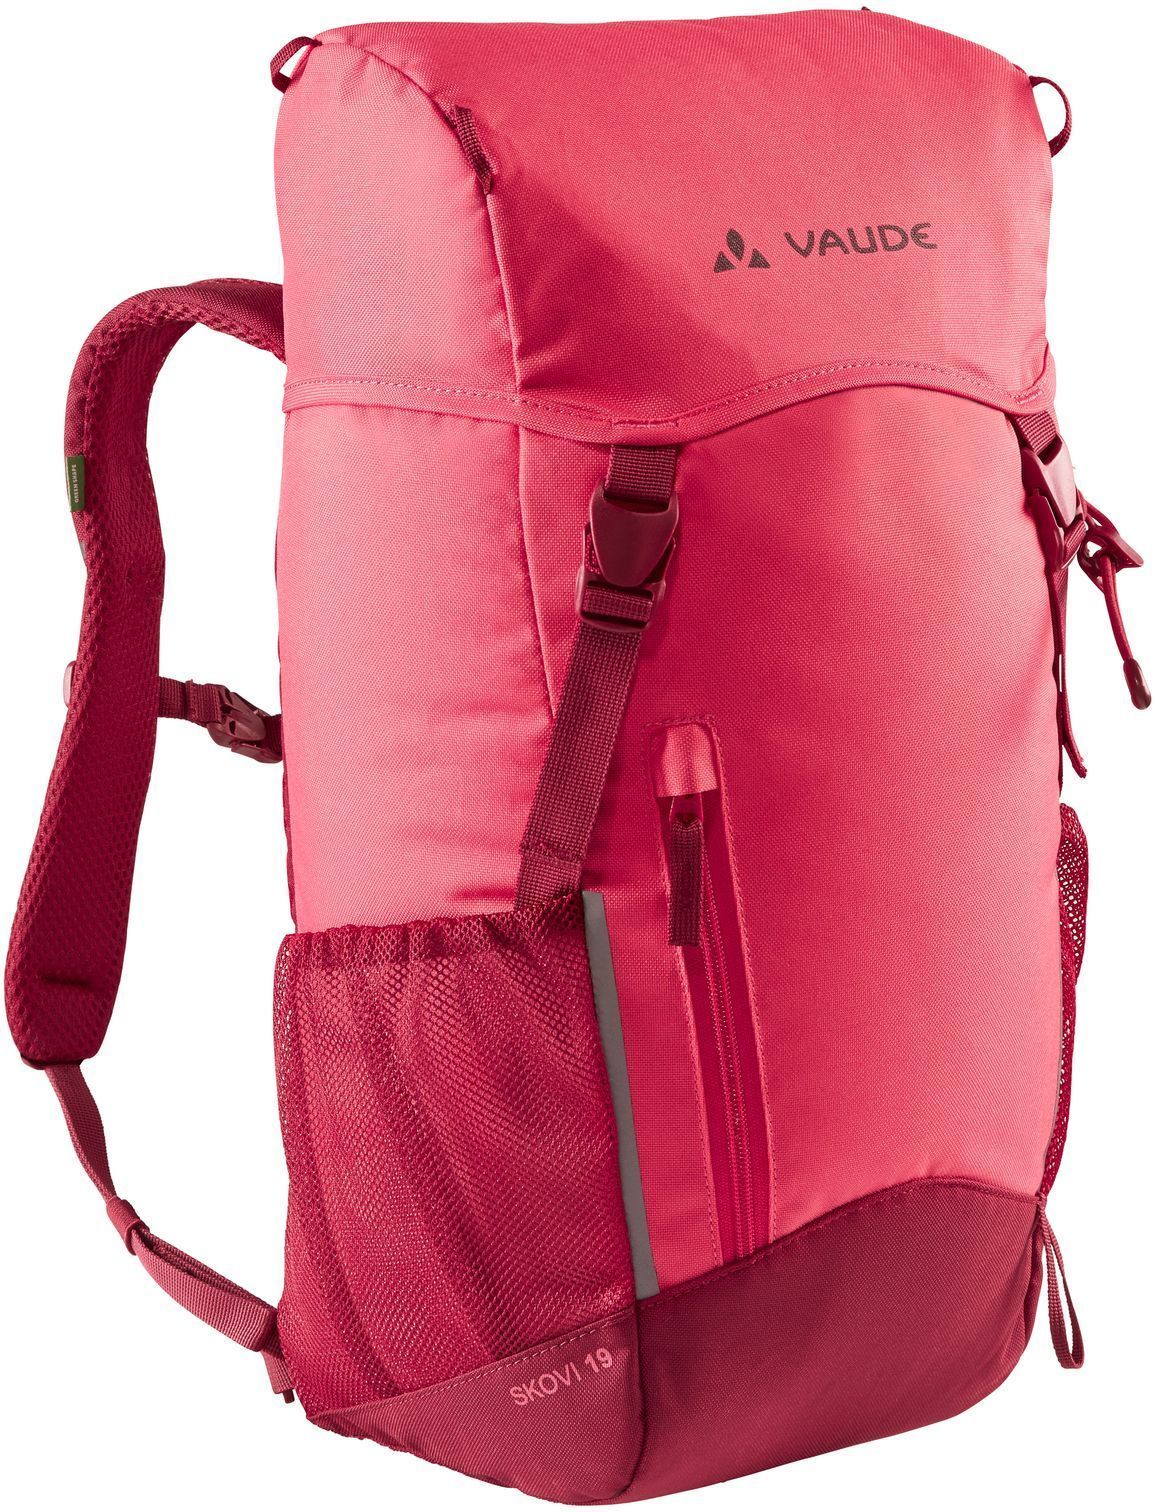 Vaude Skovi 19 - bright pink